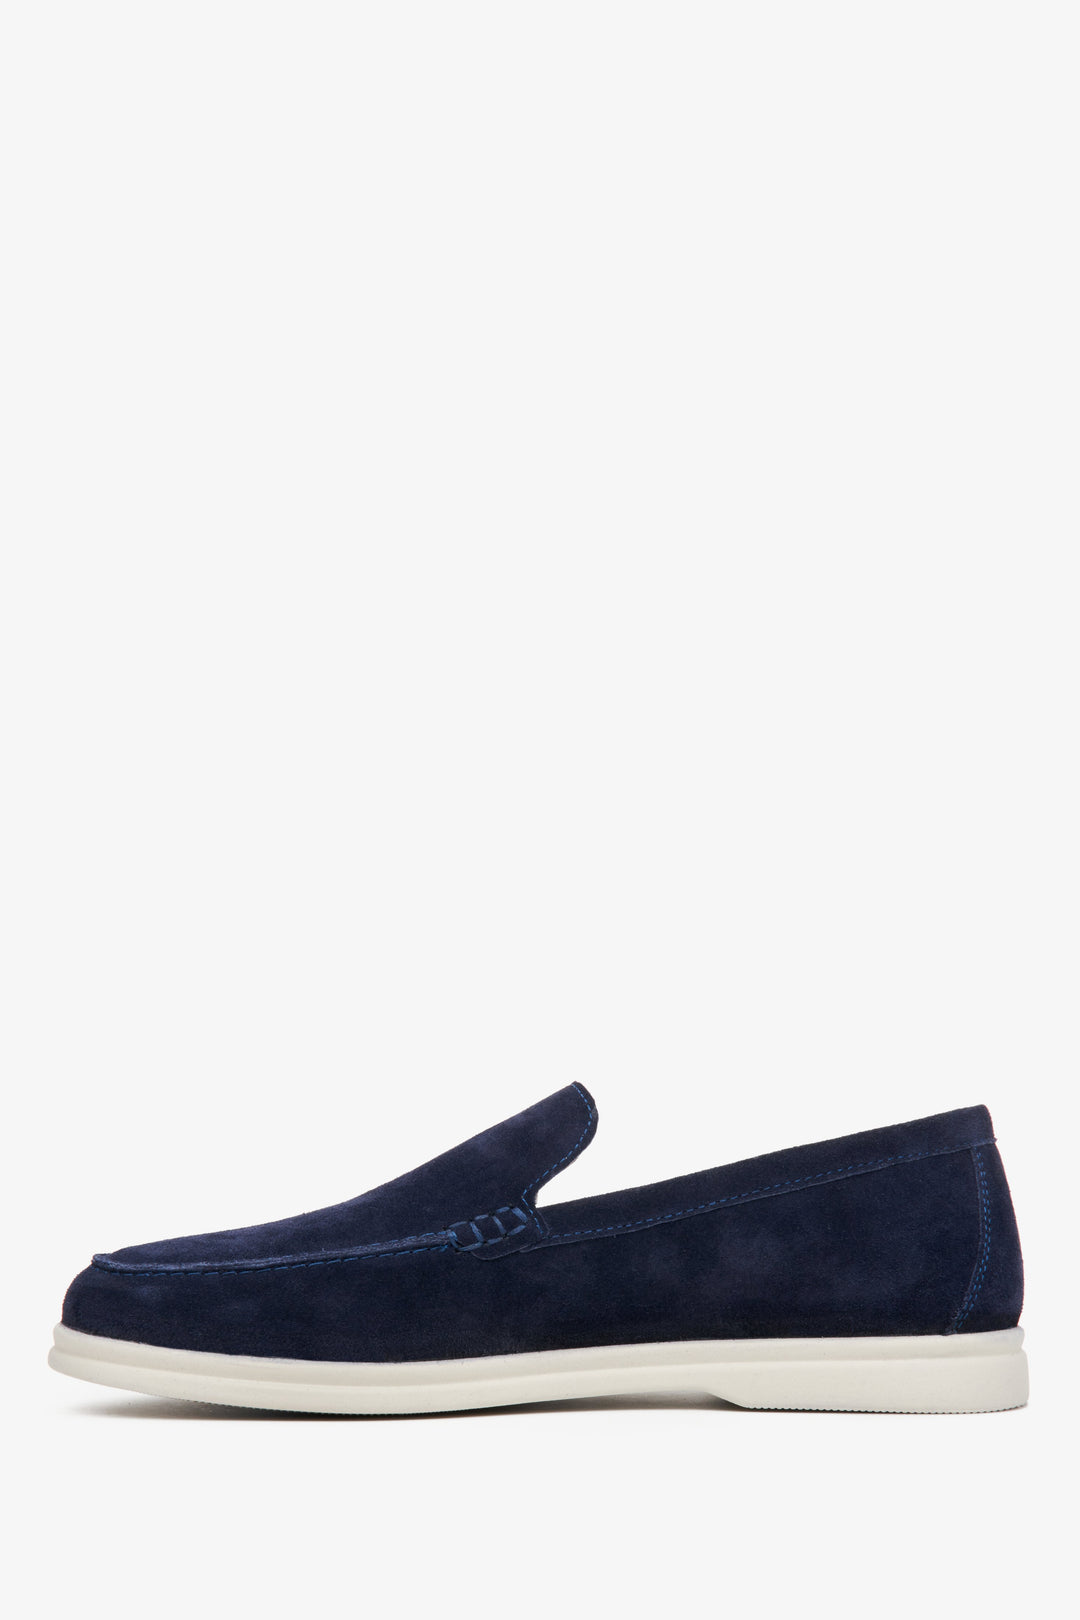 Men's navy blue loafers for spring made of natural velvet.